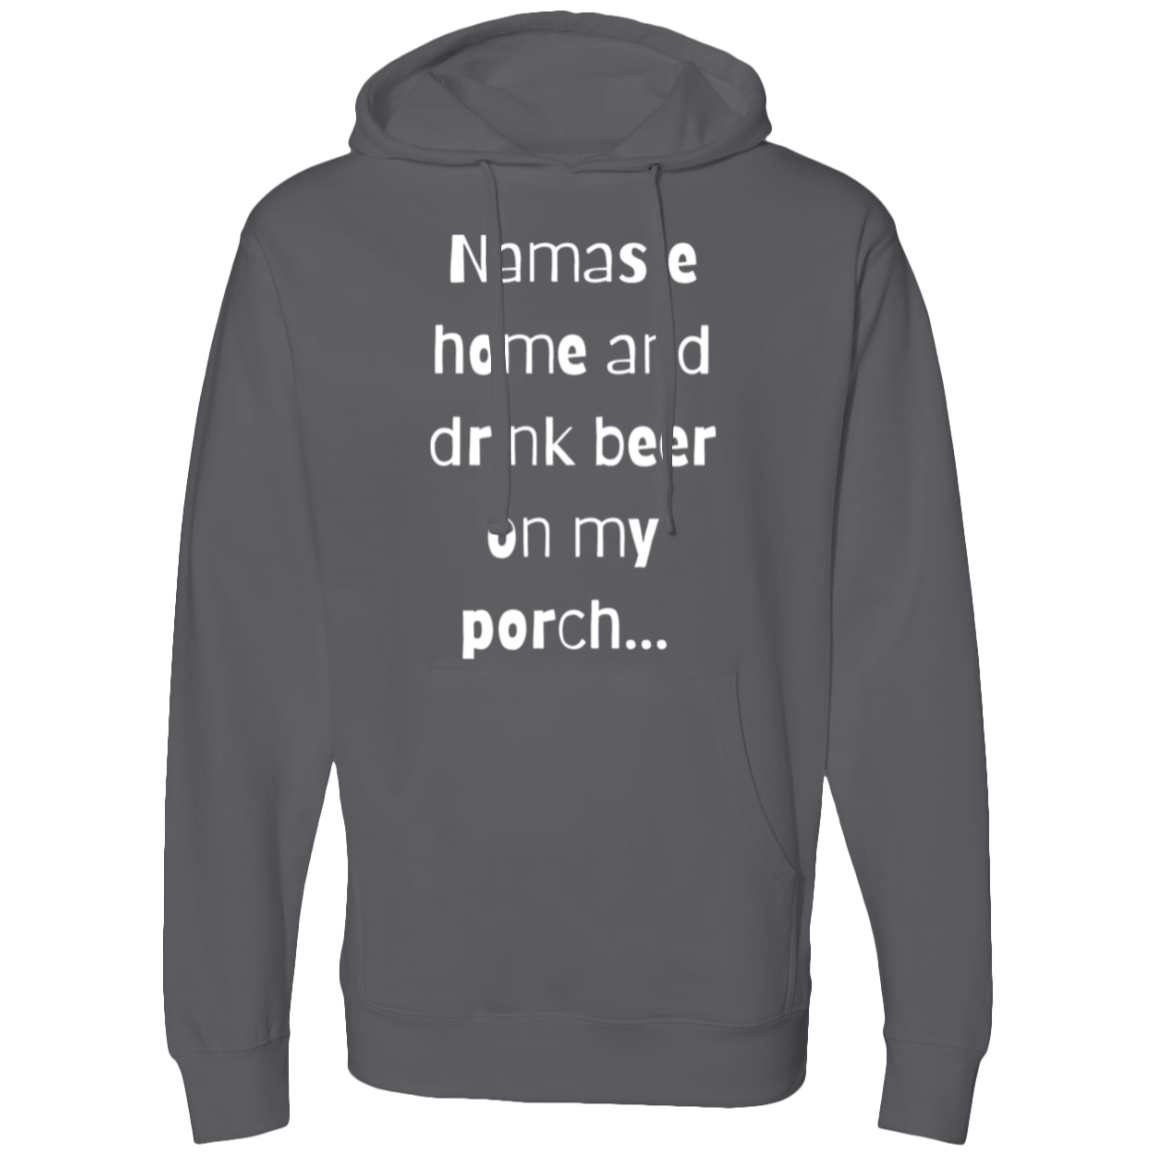 Namaste home and drink my beer Hooded Sweatshirt